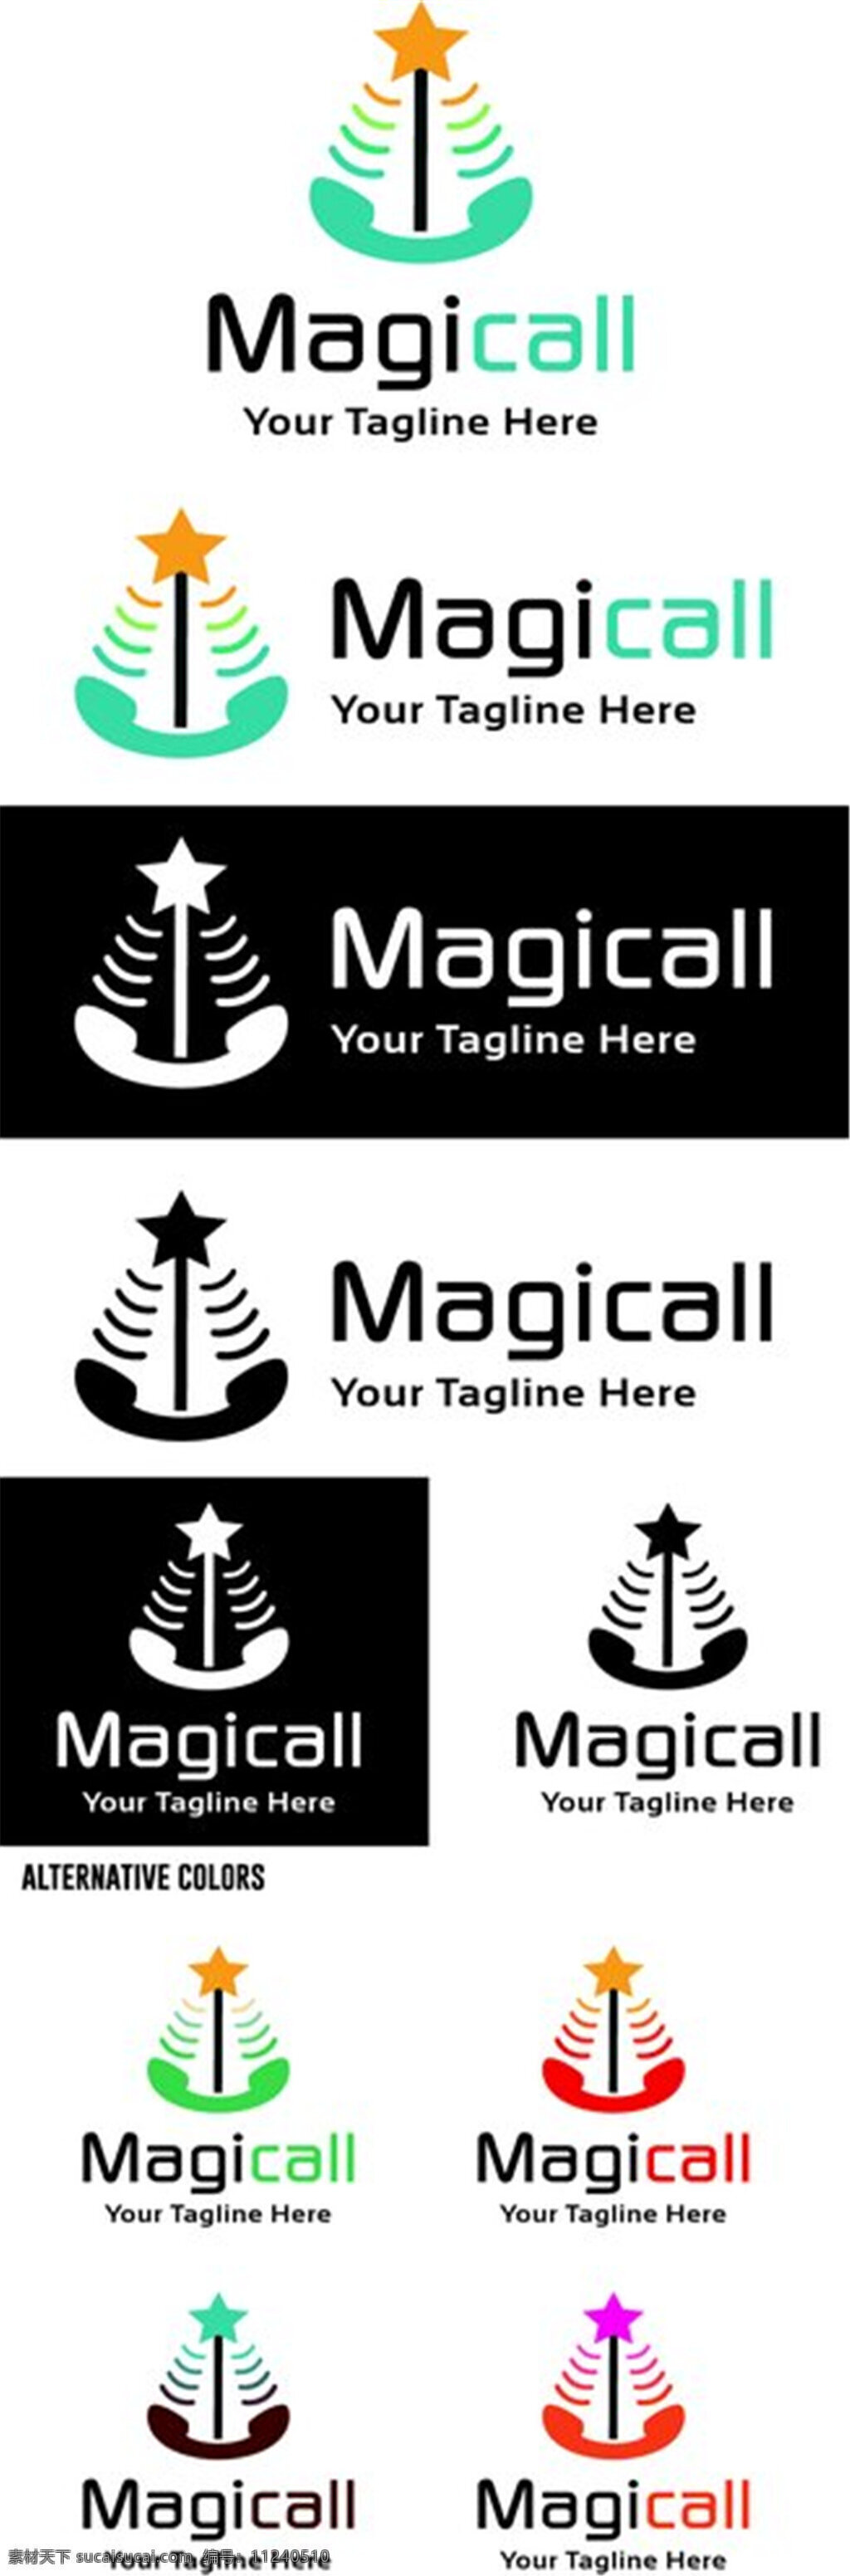 电话五角标志 标志图片 标志设计 企业logo logo设计 logo 矢量素材 商业标志 标志图片下载 电话标志 五角星标志